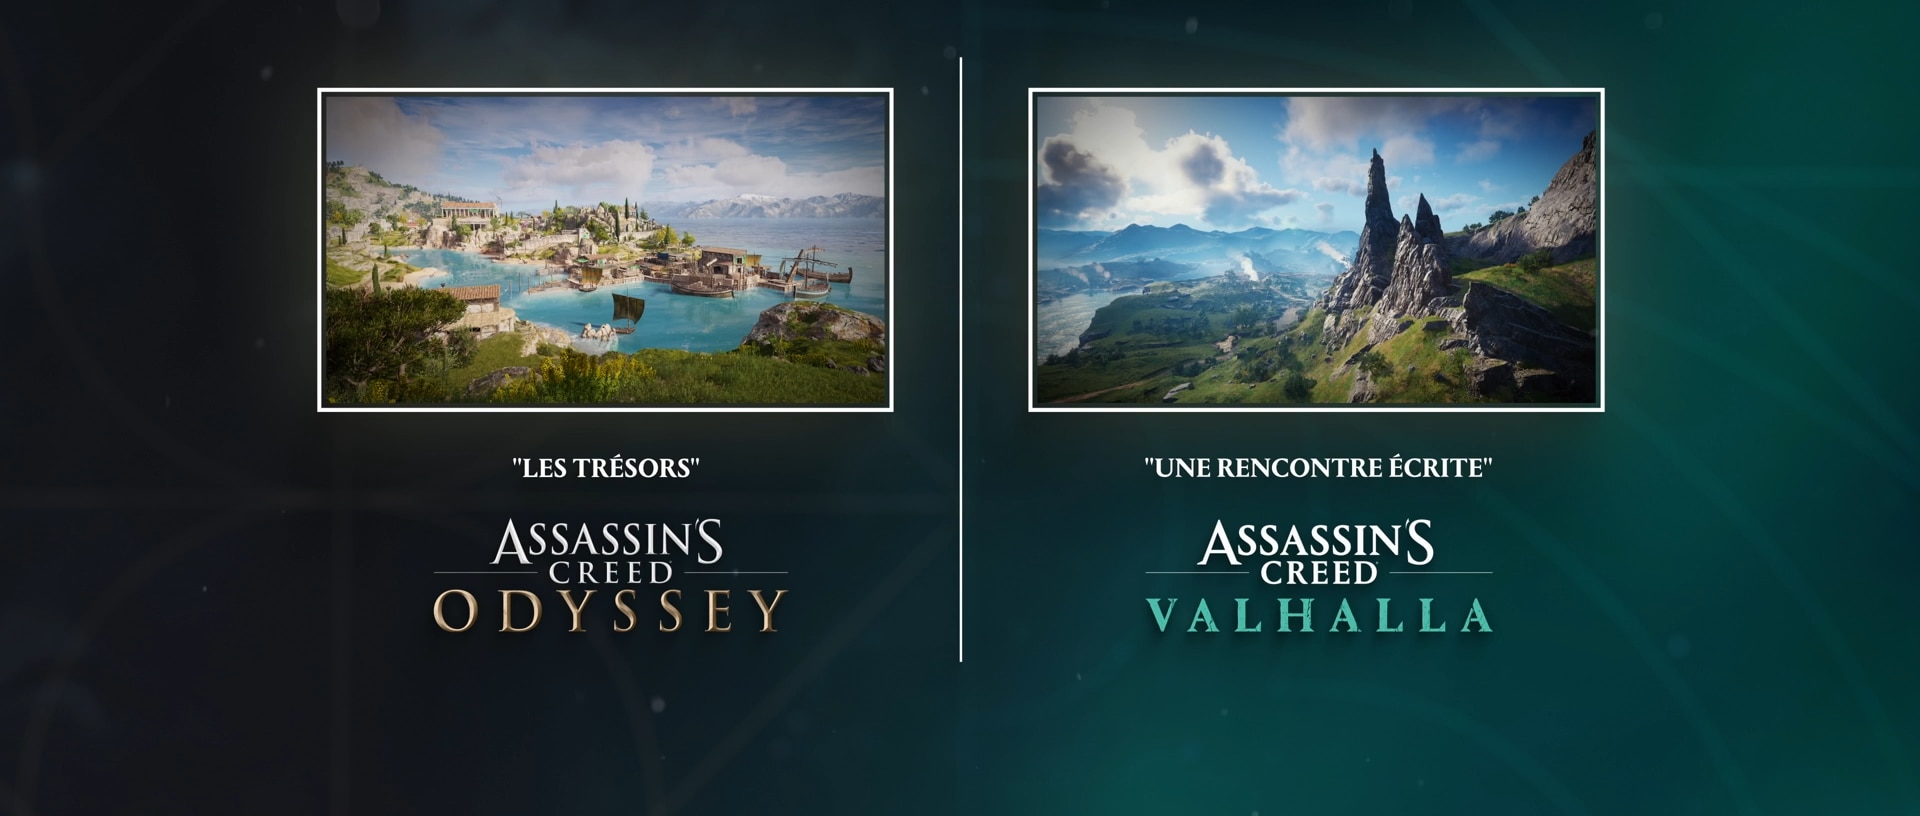 [ACV] [ACOD] Récits entrecroisés d'Assassin's Creed - graphisme de fin - French